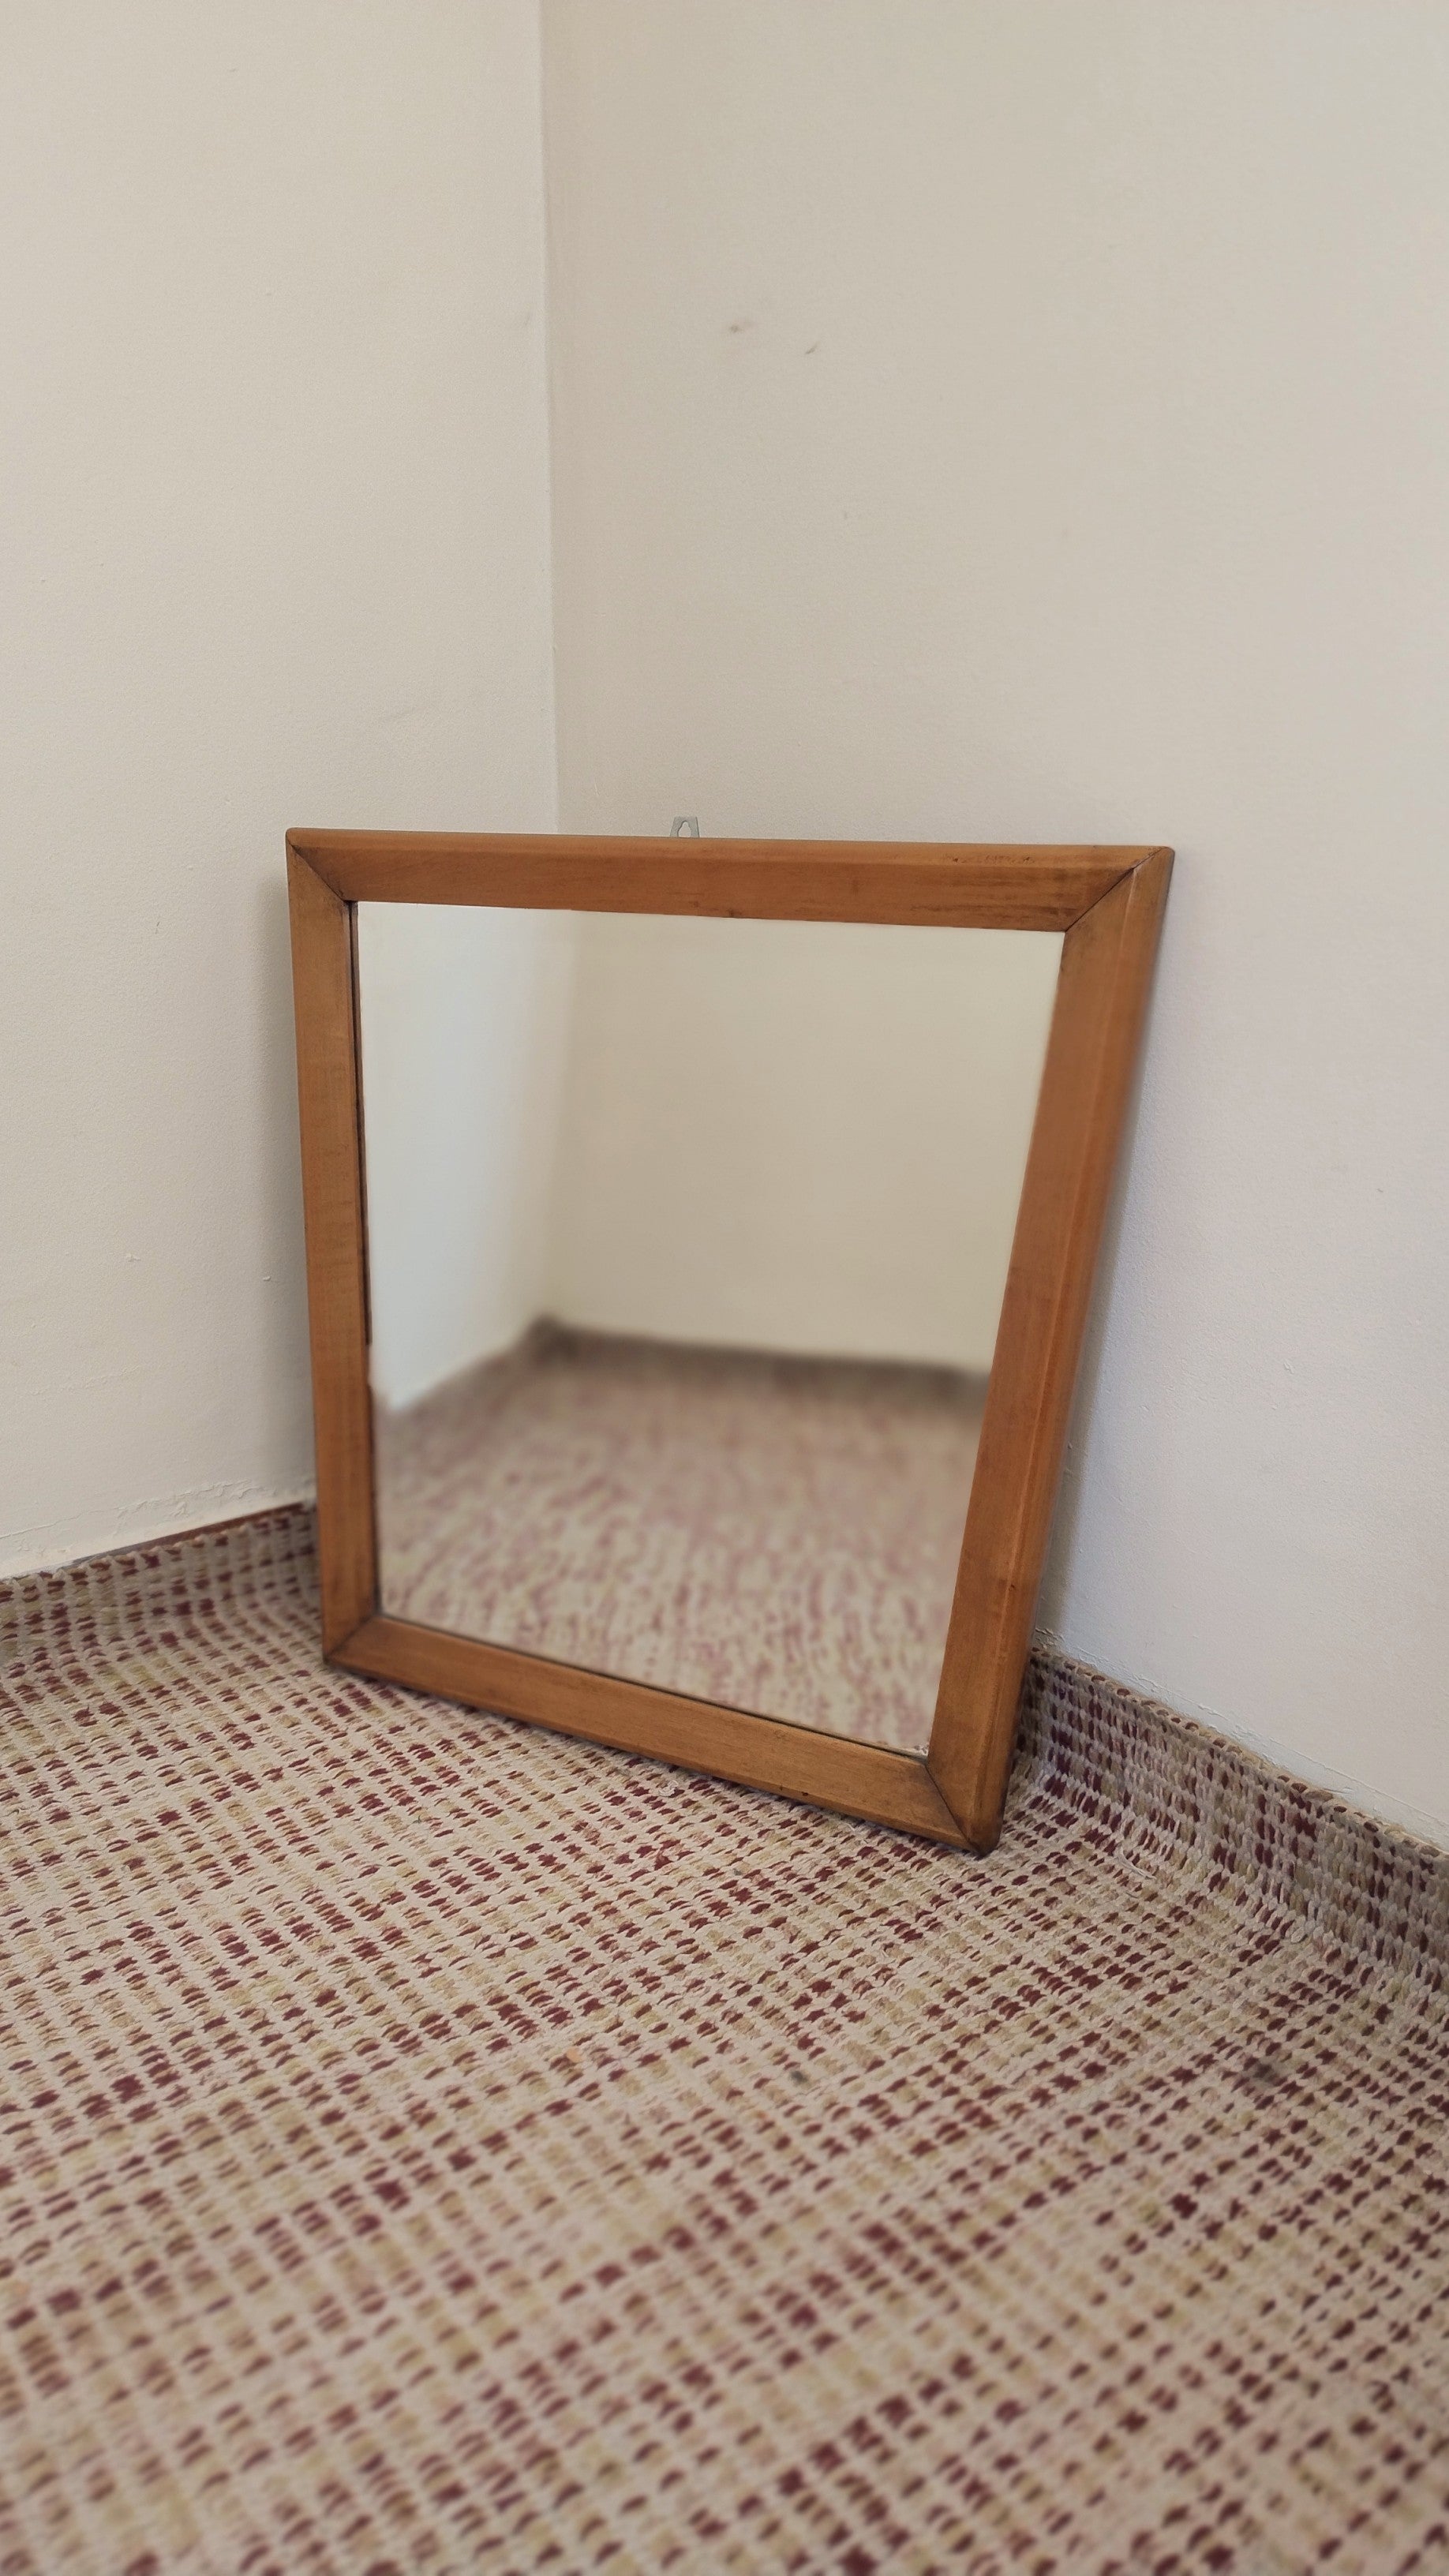 Espelho bisotado retangular anos 60 em madeira maciça clara ( 100cm X 63,5cm)